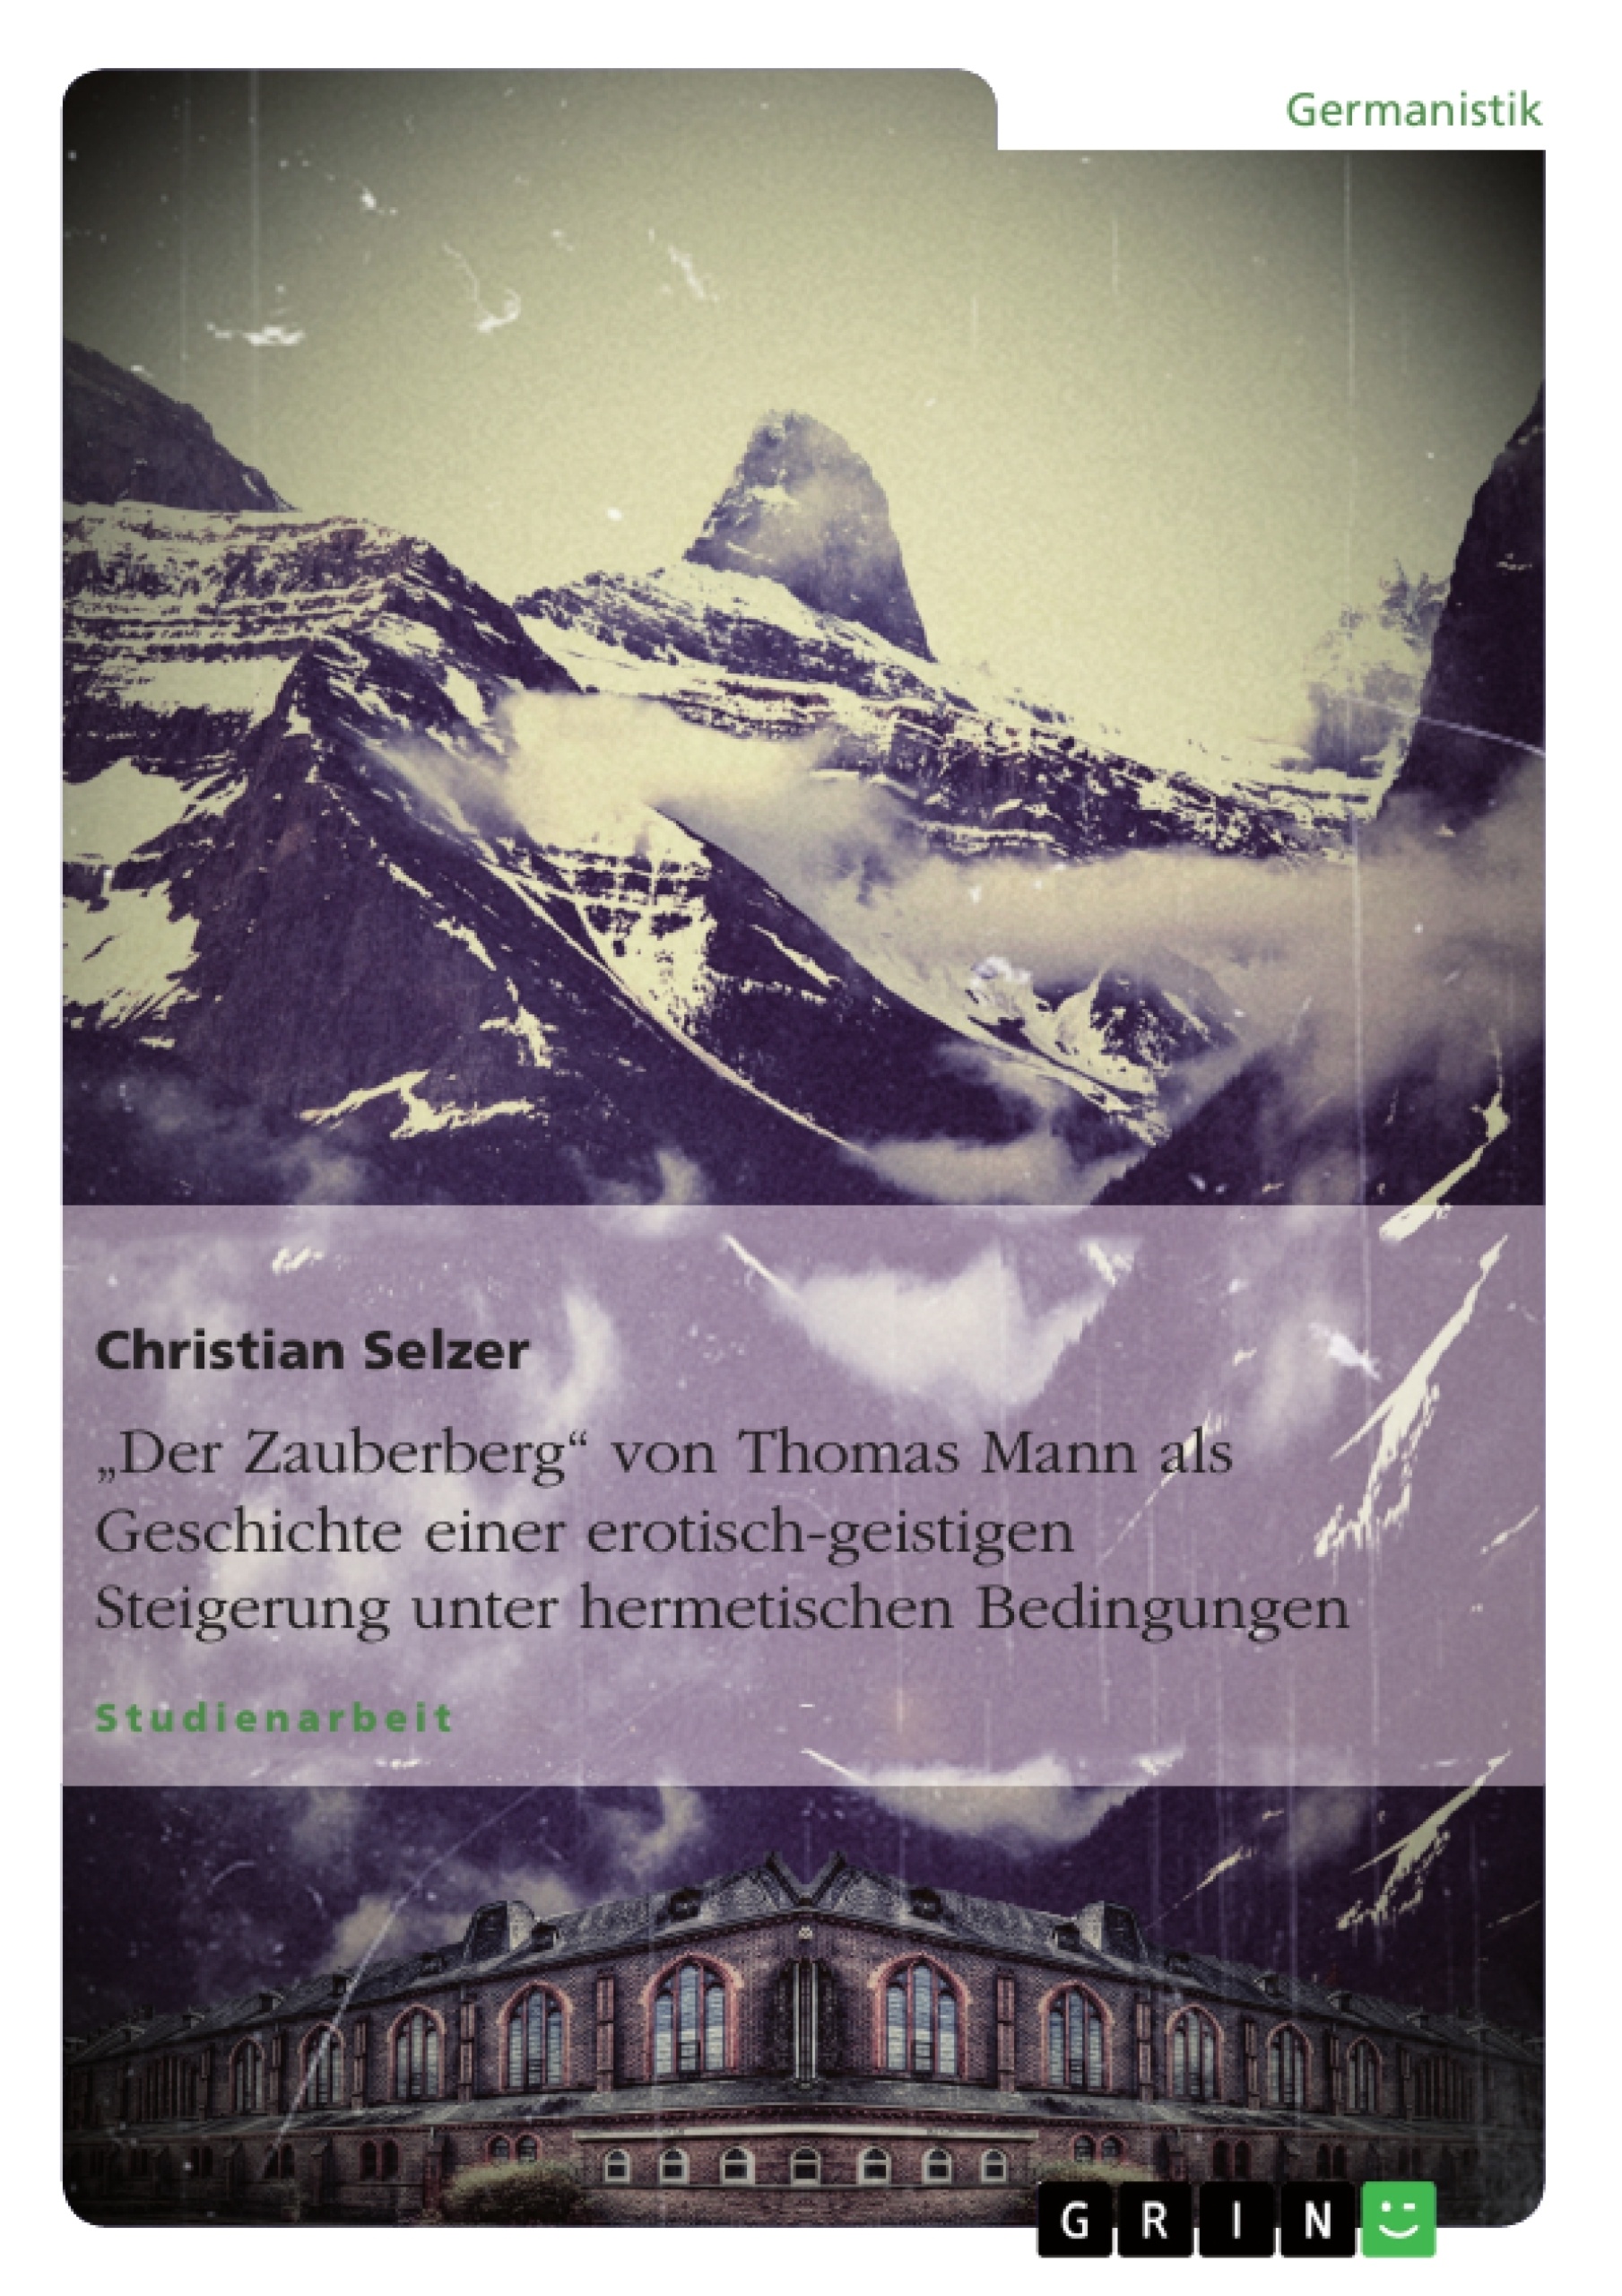 Titel: "Der Zauberberg" von Thomas Mann als Geschichte einer erotisch-geistigen Steigerung unter hermetischen Bedingungen